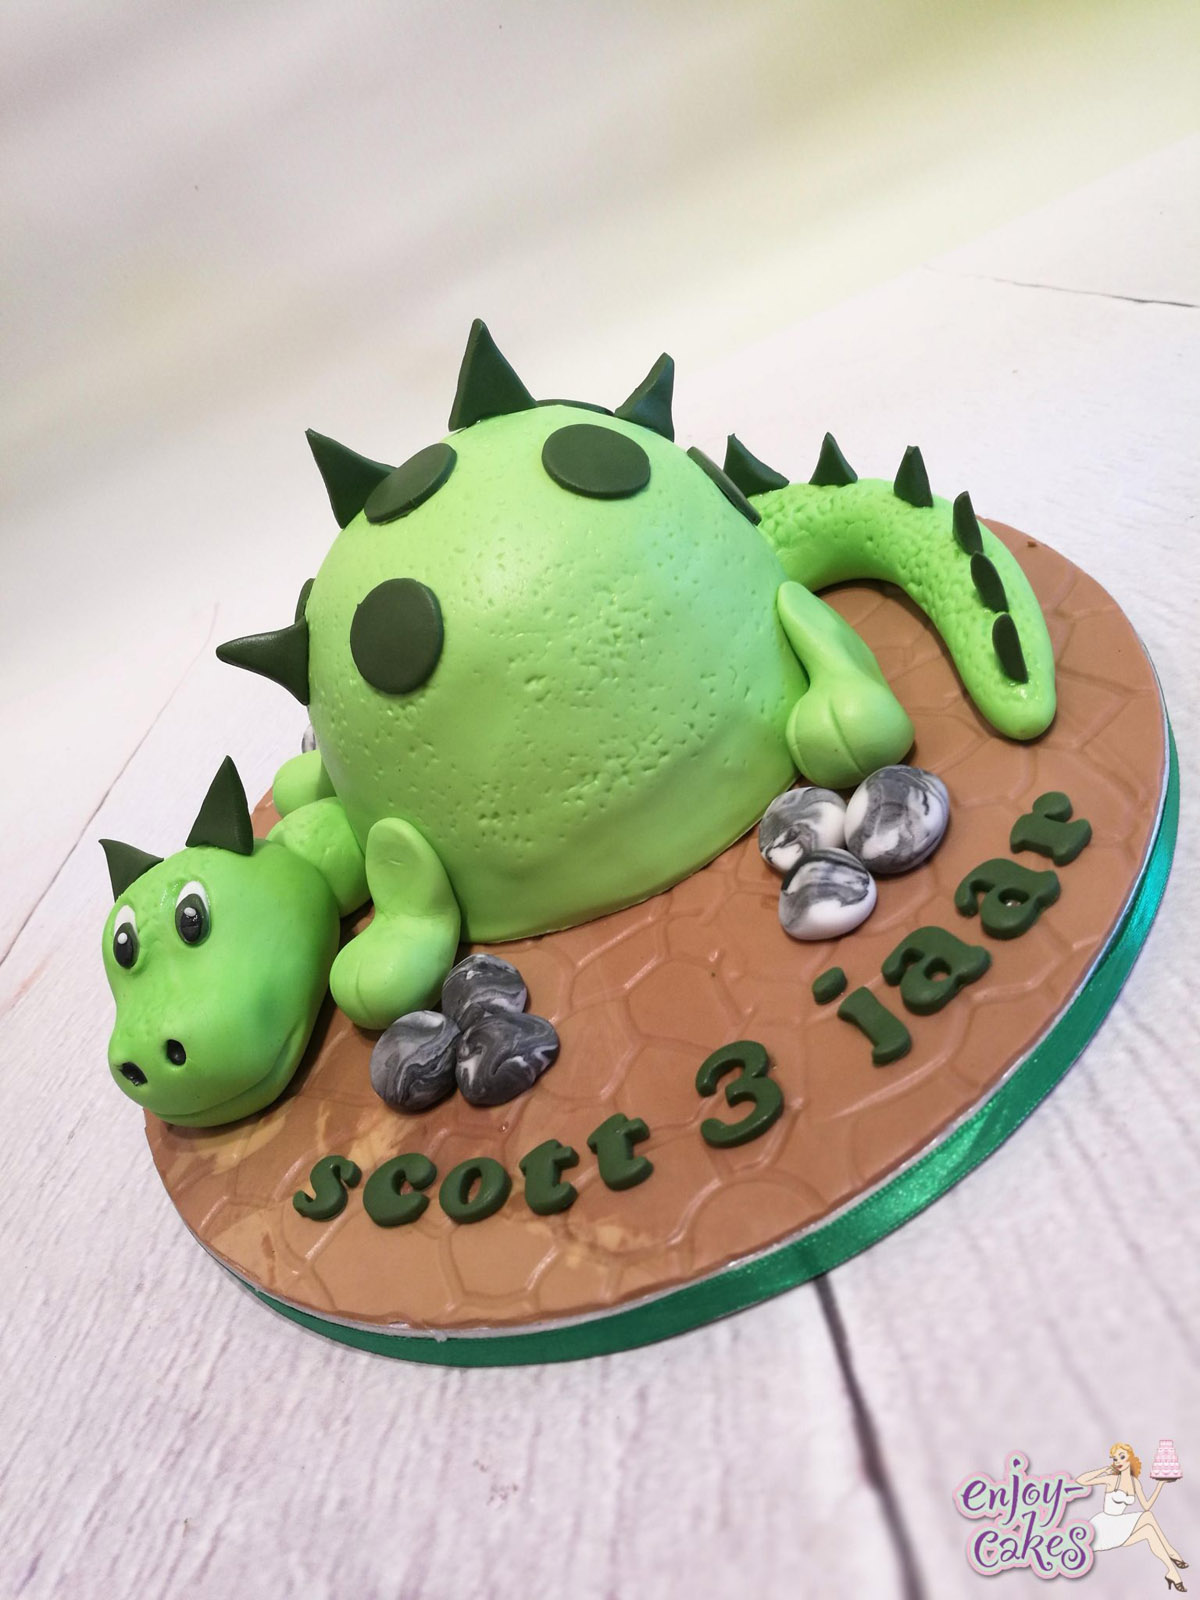 Dinosaurus Meptaartje Enjoy Cakes 2758